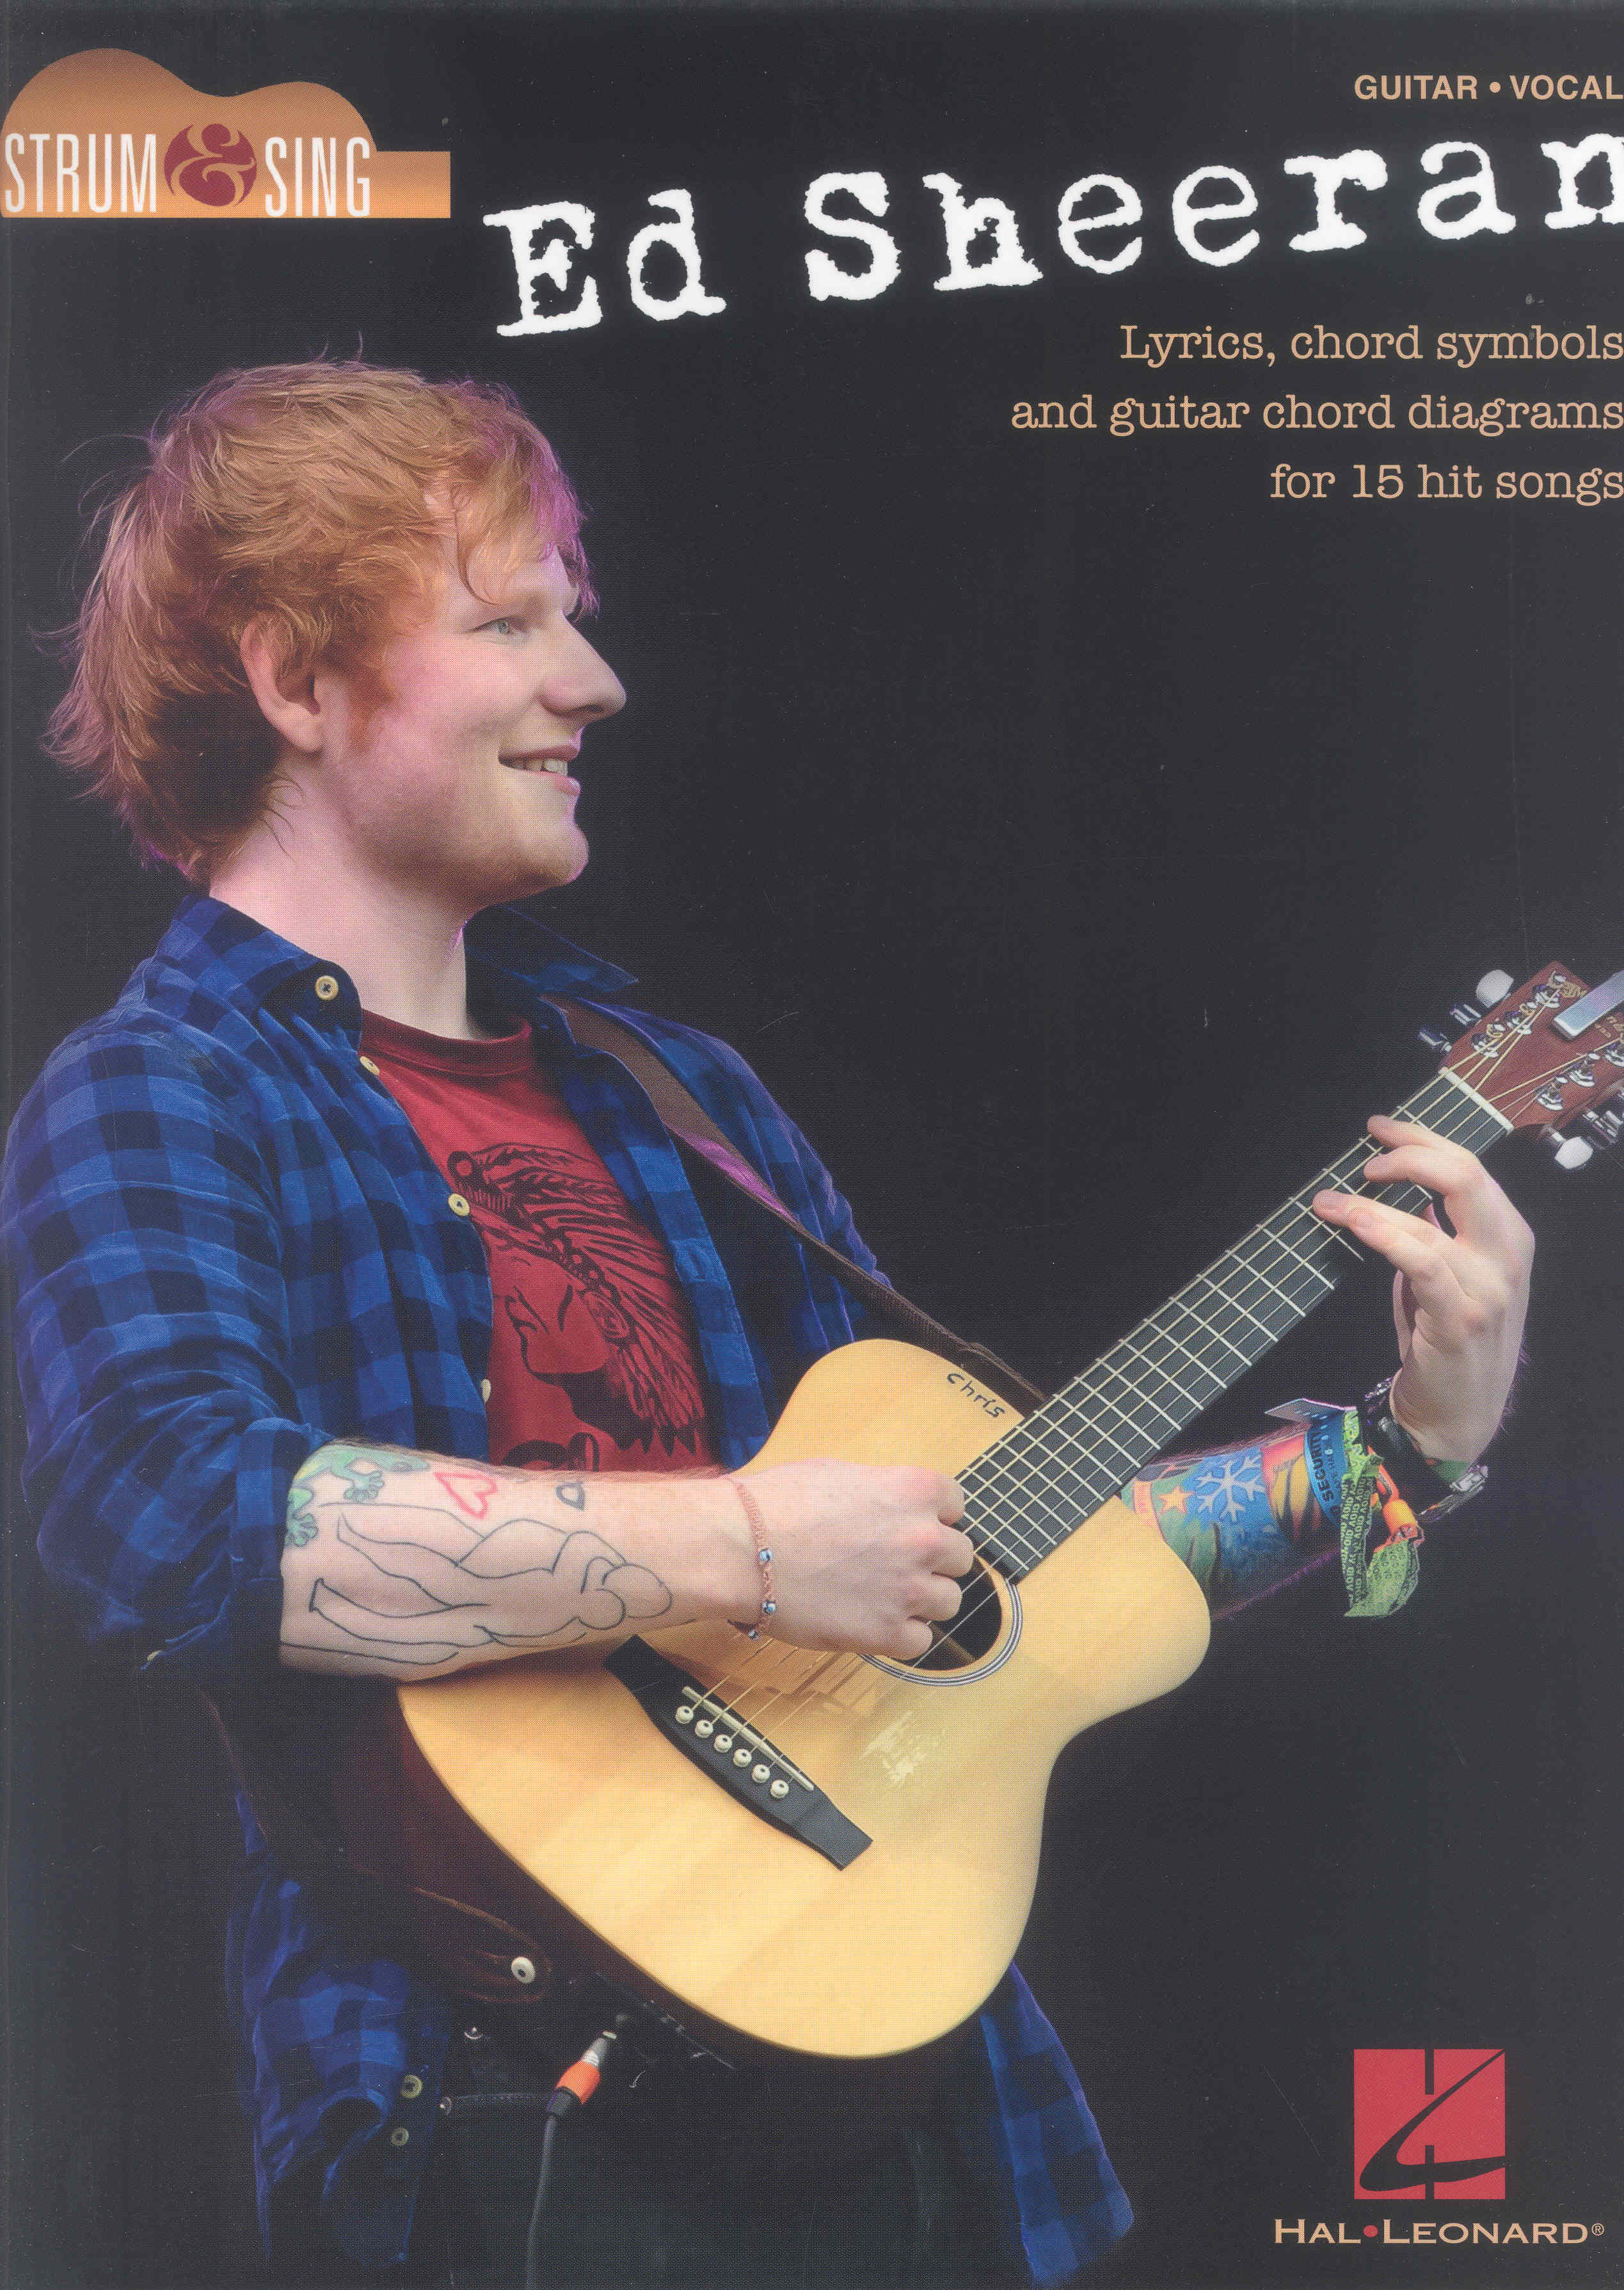 Ed Sheeran Strum & Sing Lyrics & Chords Sheet Music Songbook